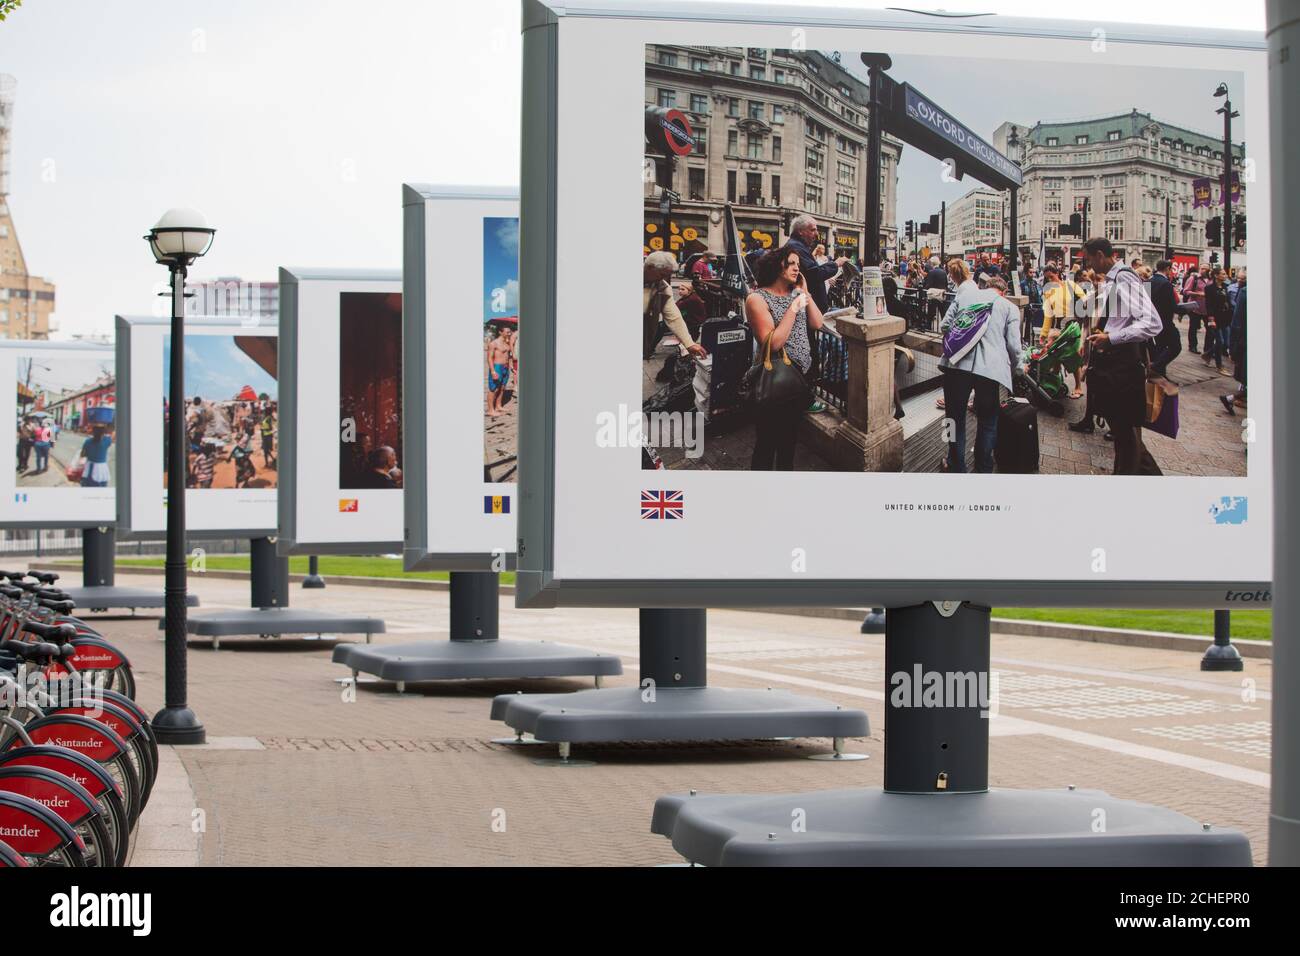 Miembros del público miran imágenes de capitales de todo el mundo por el fotógrafo Jeroen Swolfs en el debut británico de la exposición de fotografía Streets of the World en Canary Wharf, Londres. Foto de stock